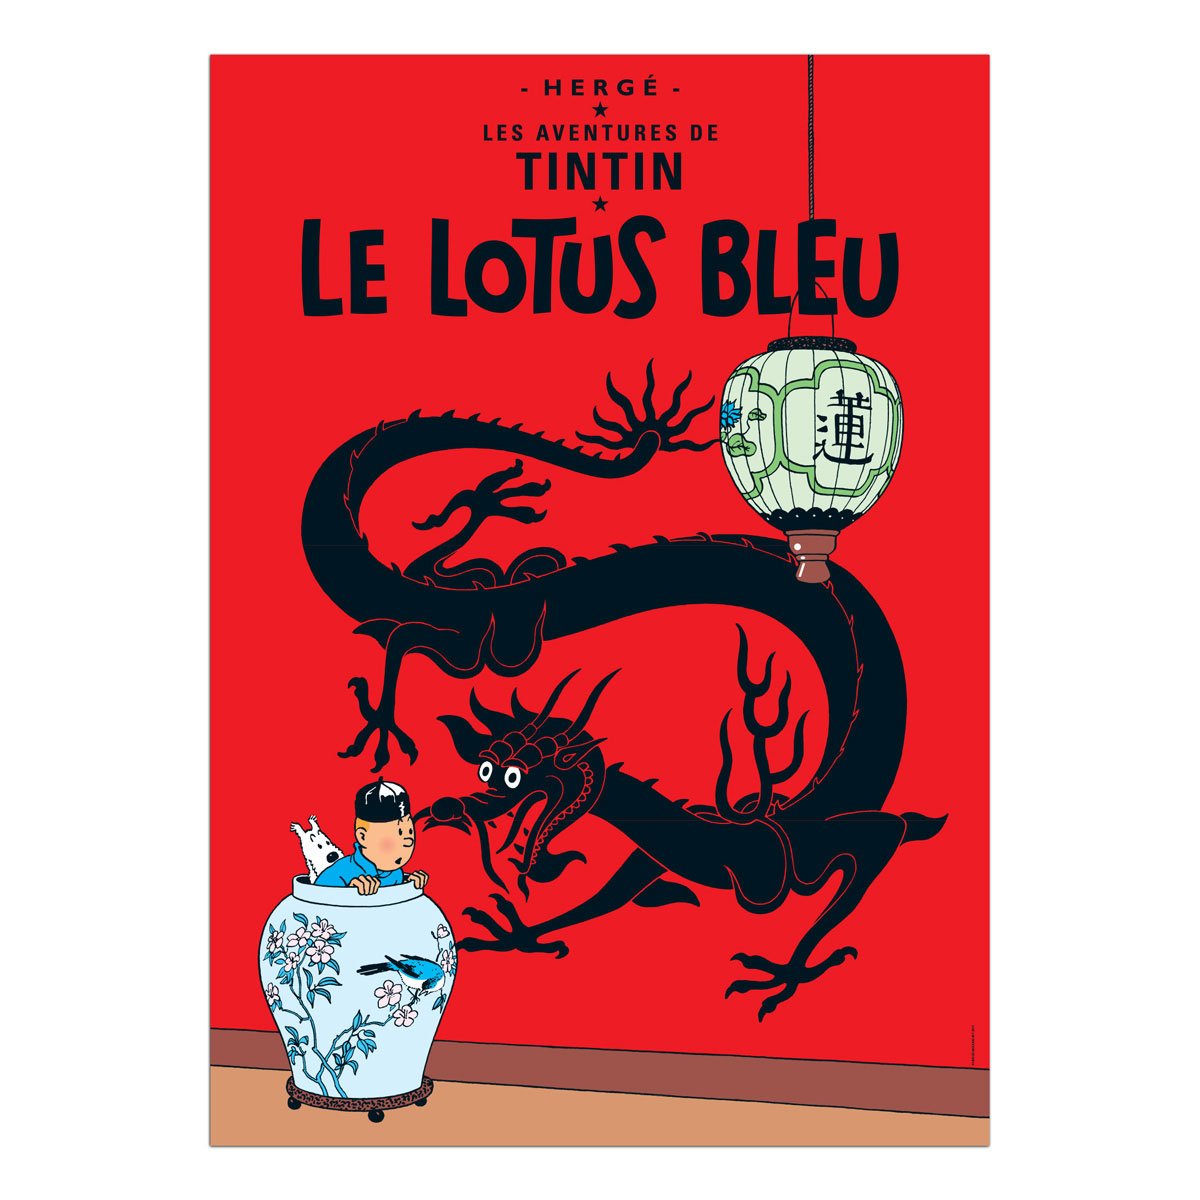 Tintin book postcards Lotus